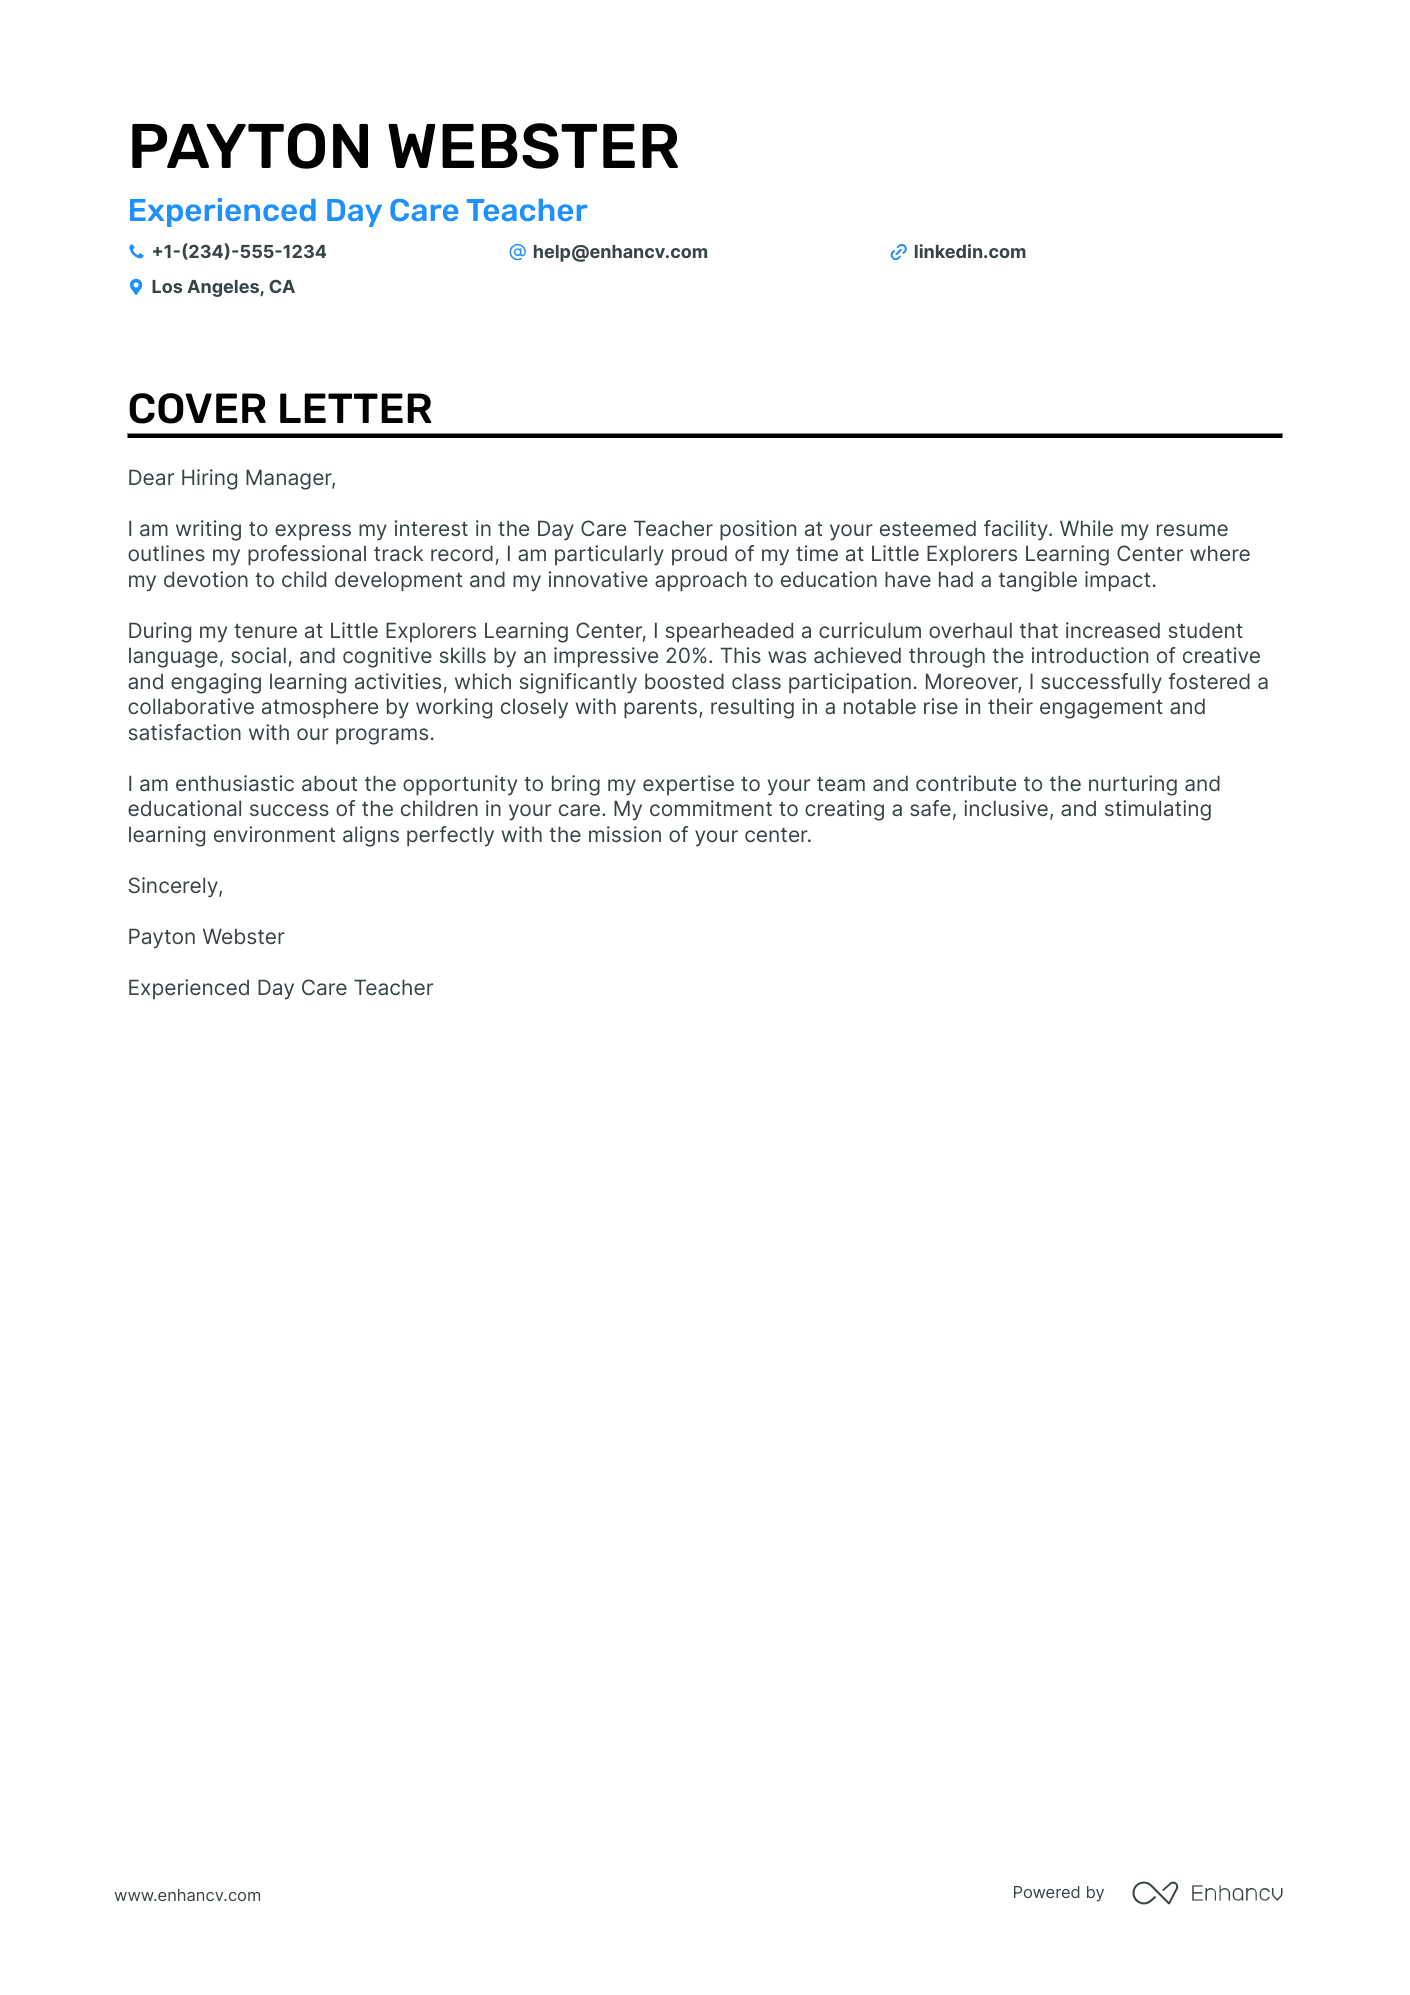 Day Care Teacher cover letter